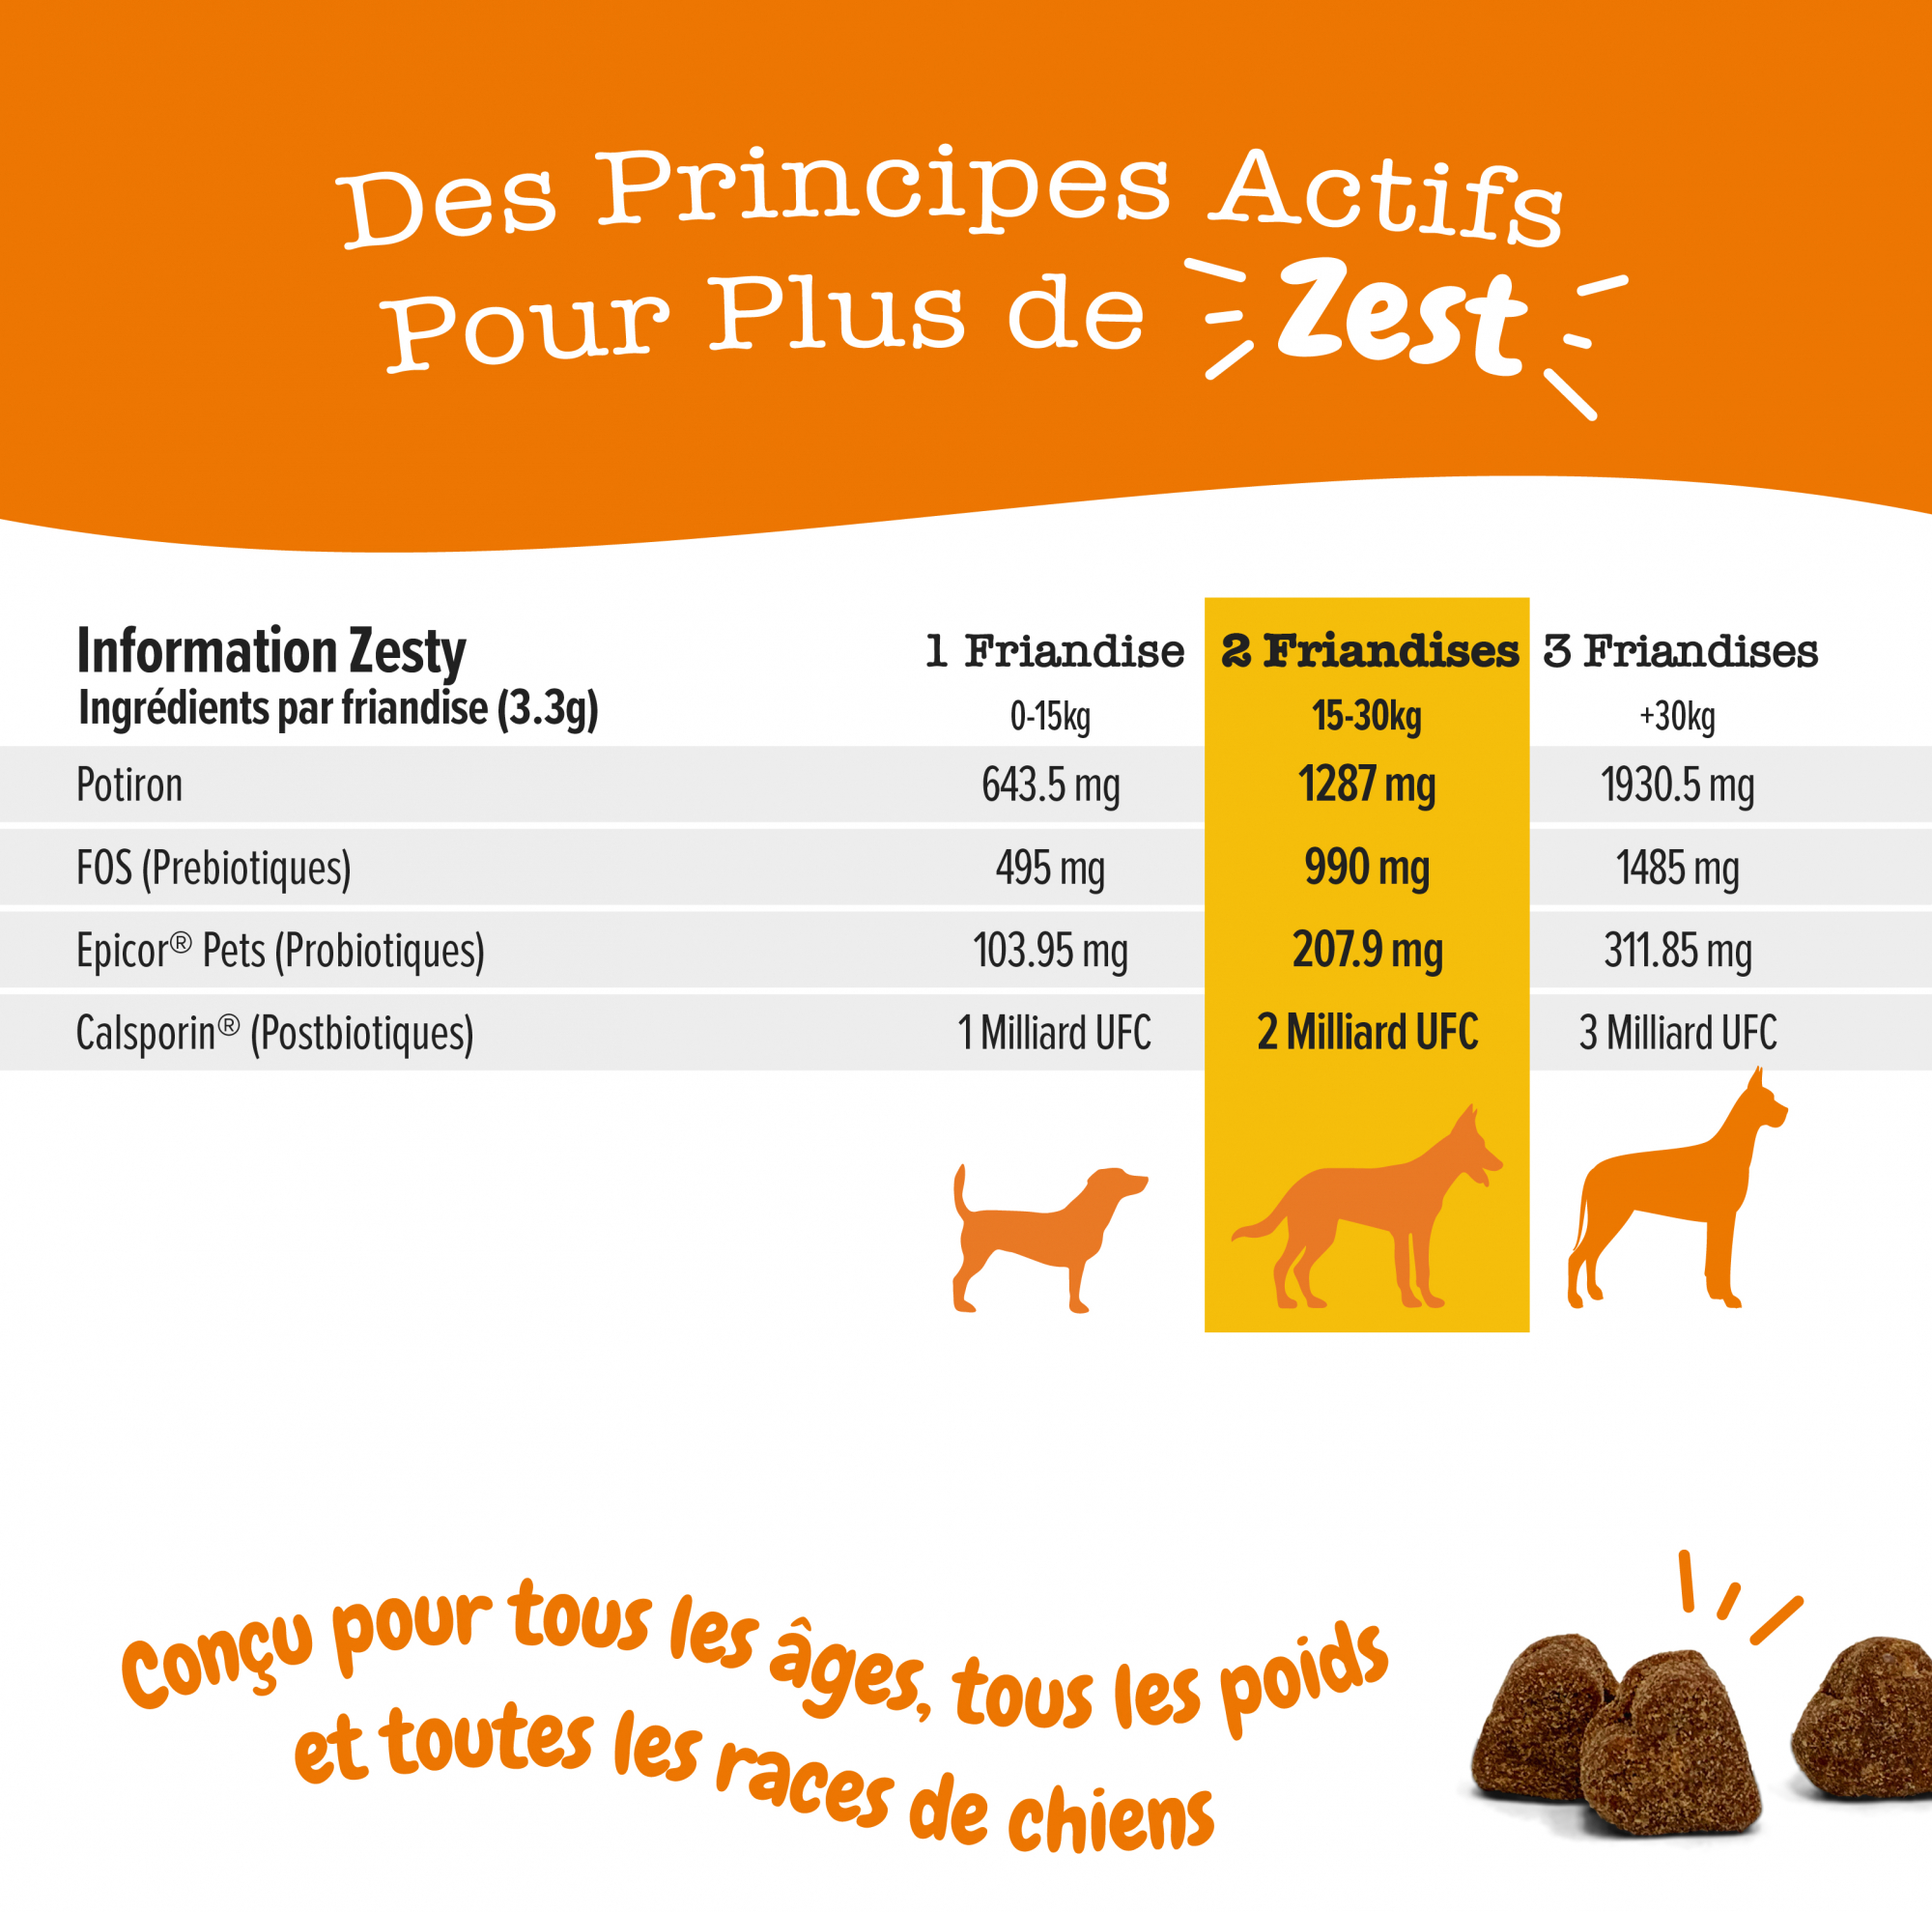 ZESTY PAWS Probiotic Chews para perros